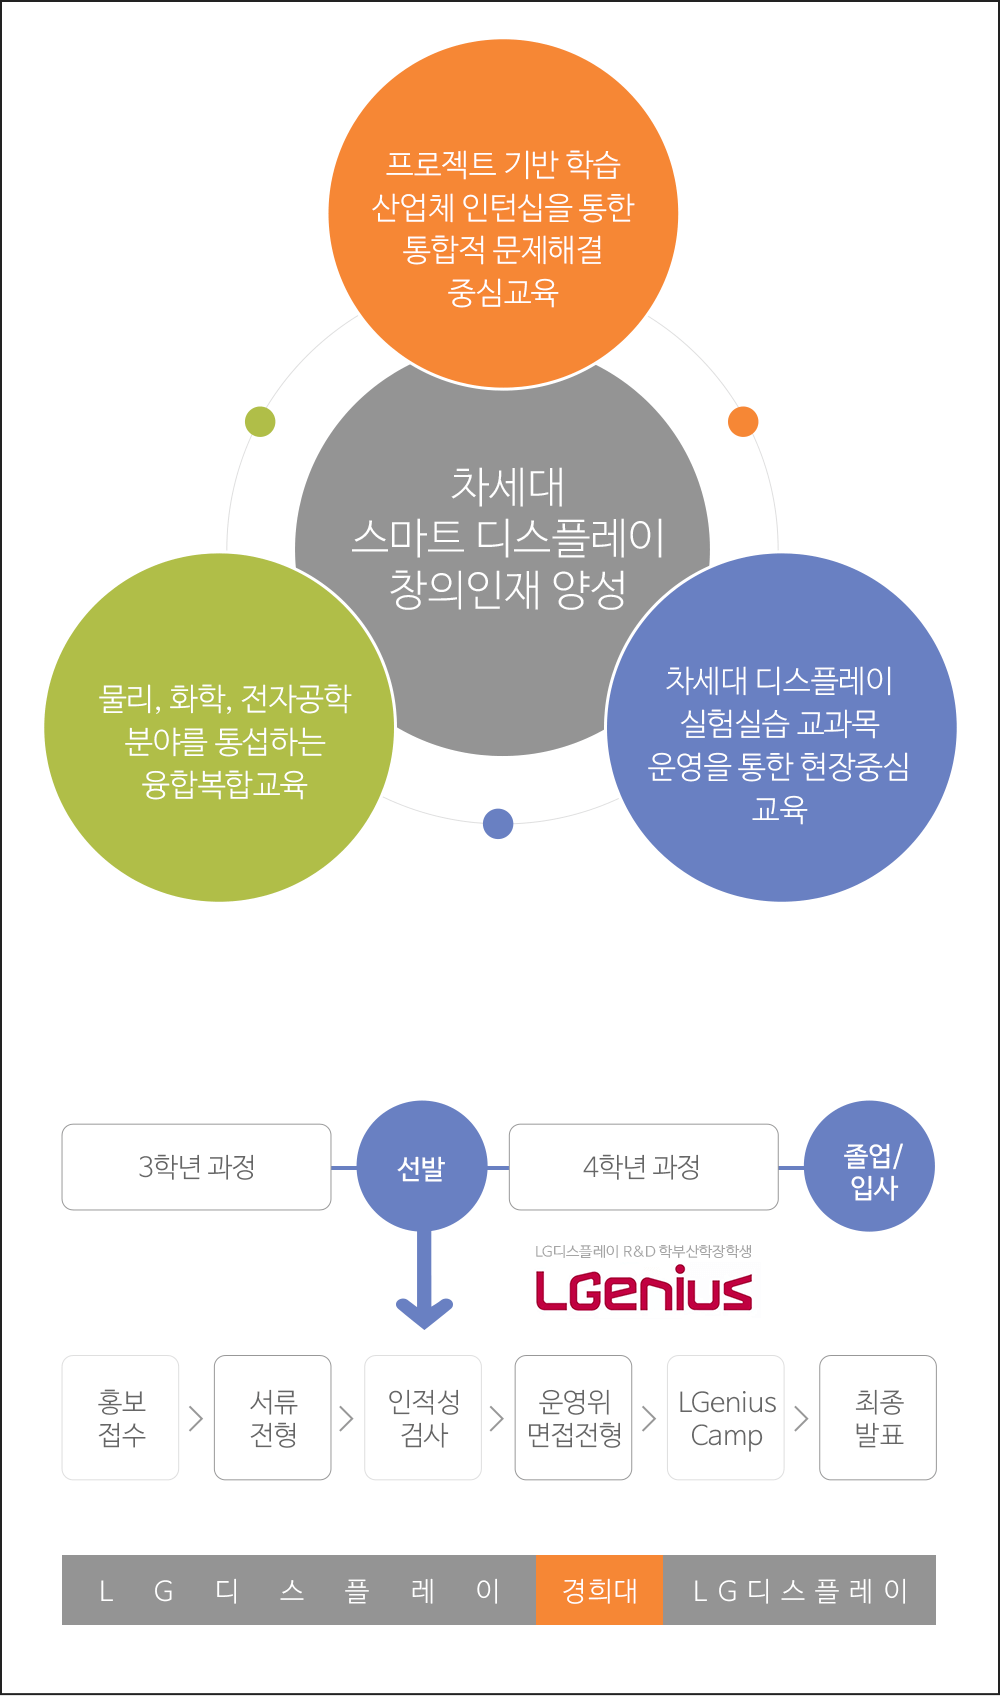 정보디스플에이학과 LGenius 트랙 운영개요 및 교육목표